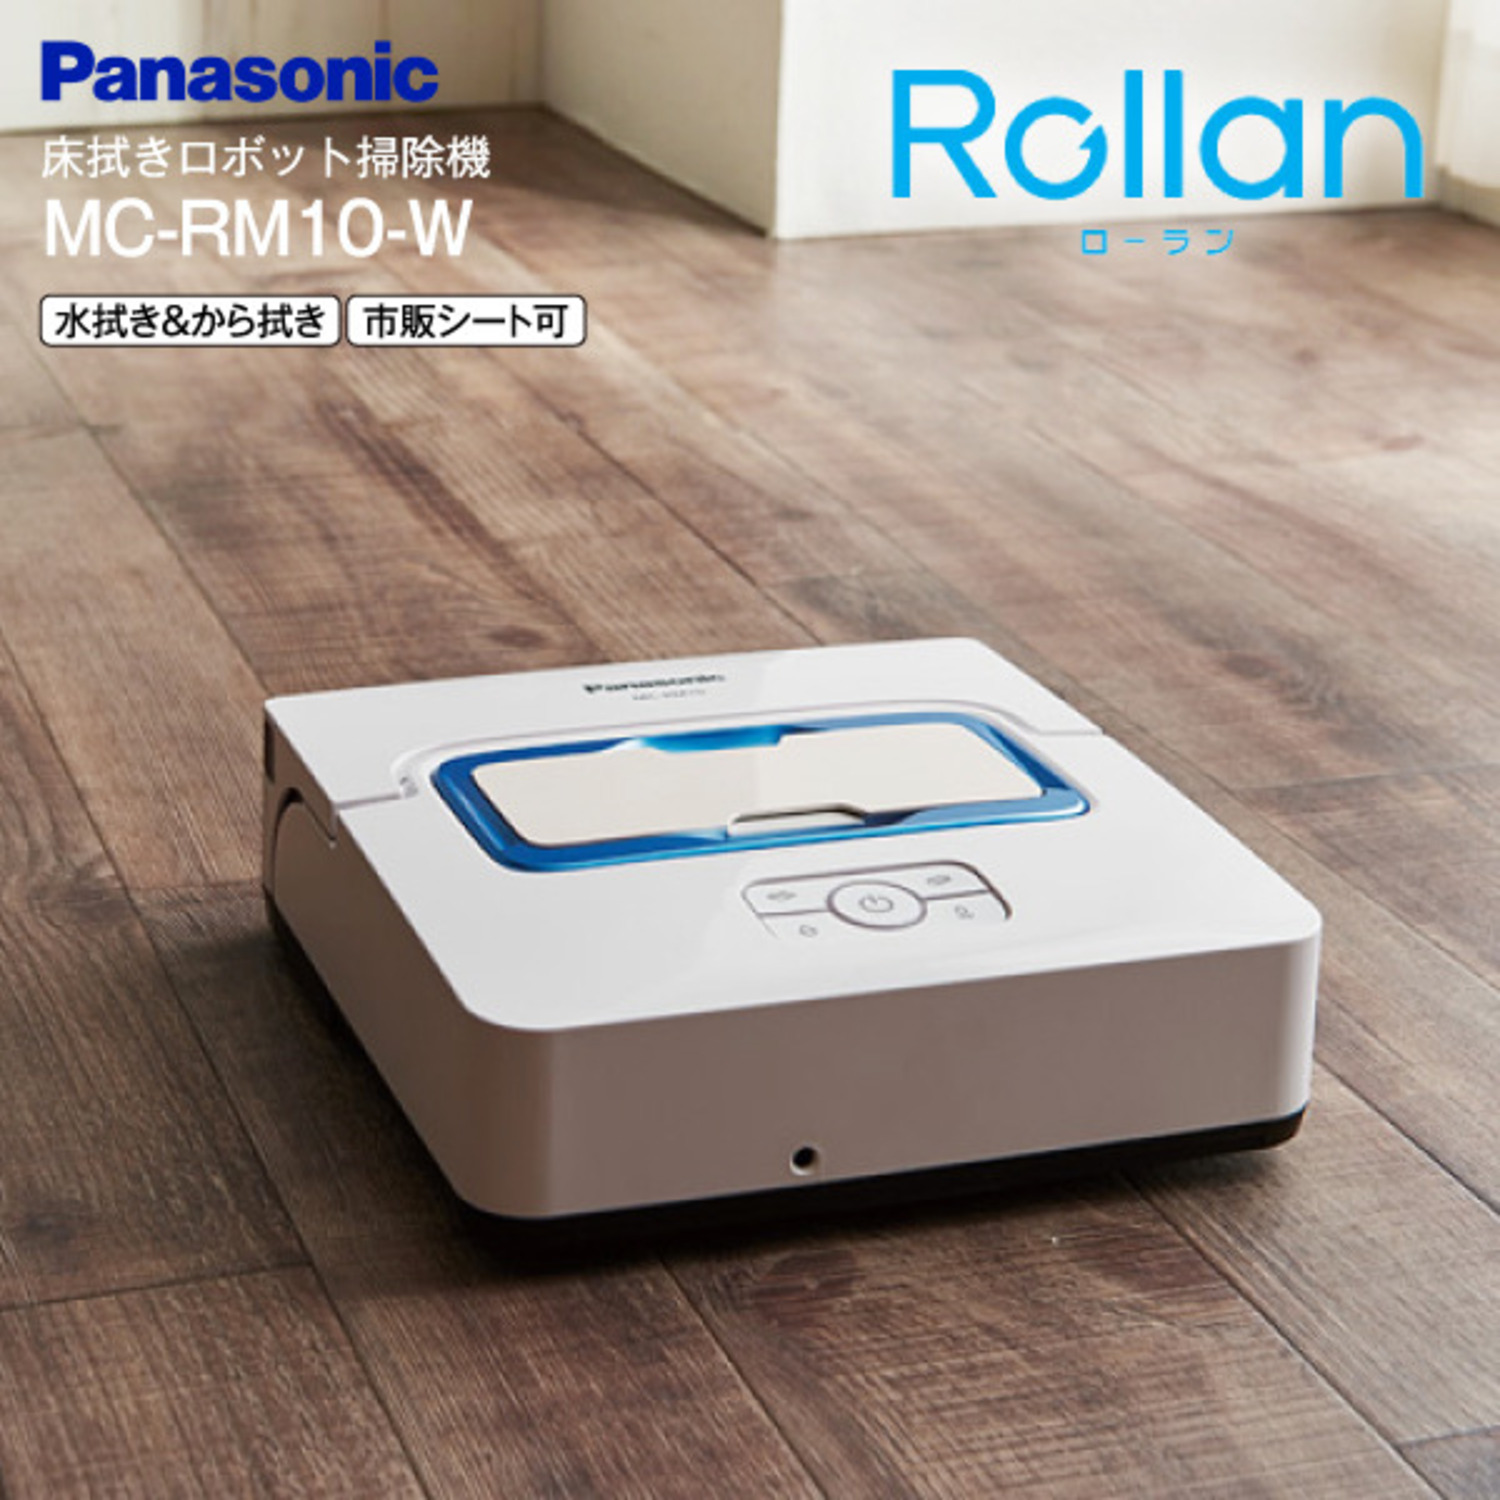 Panasonic パナソニック 床拭きロボット掃除機 MC-RM10-W-